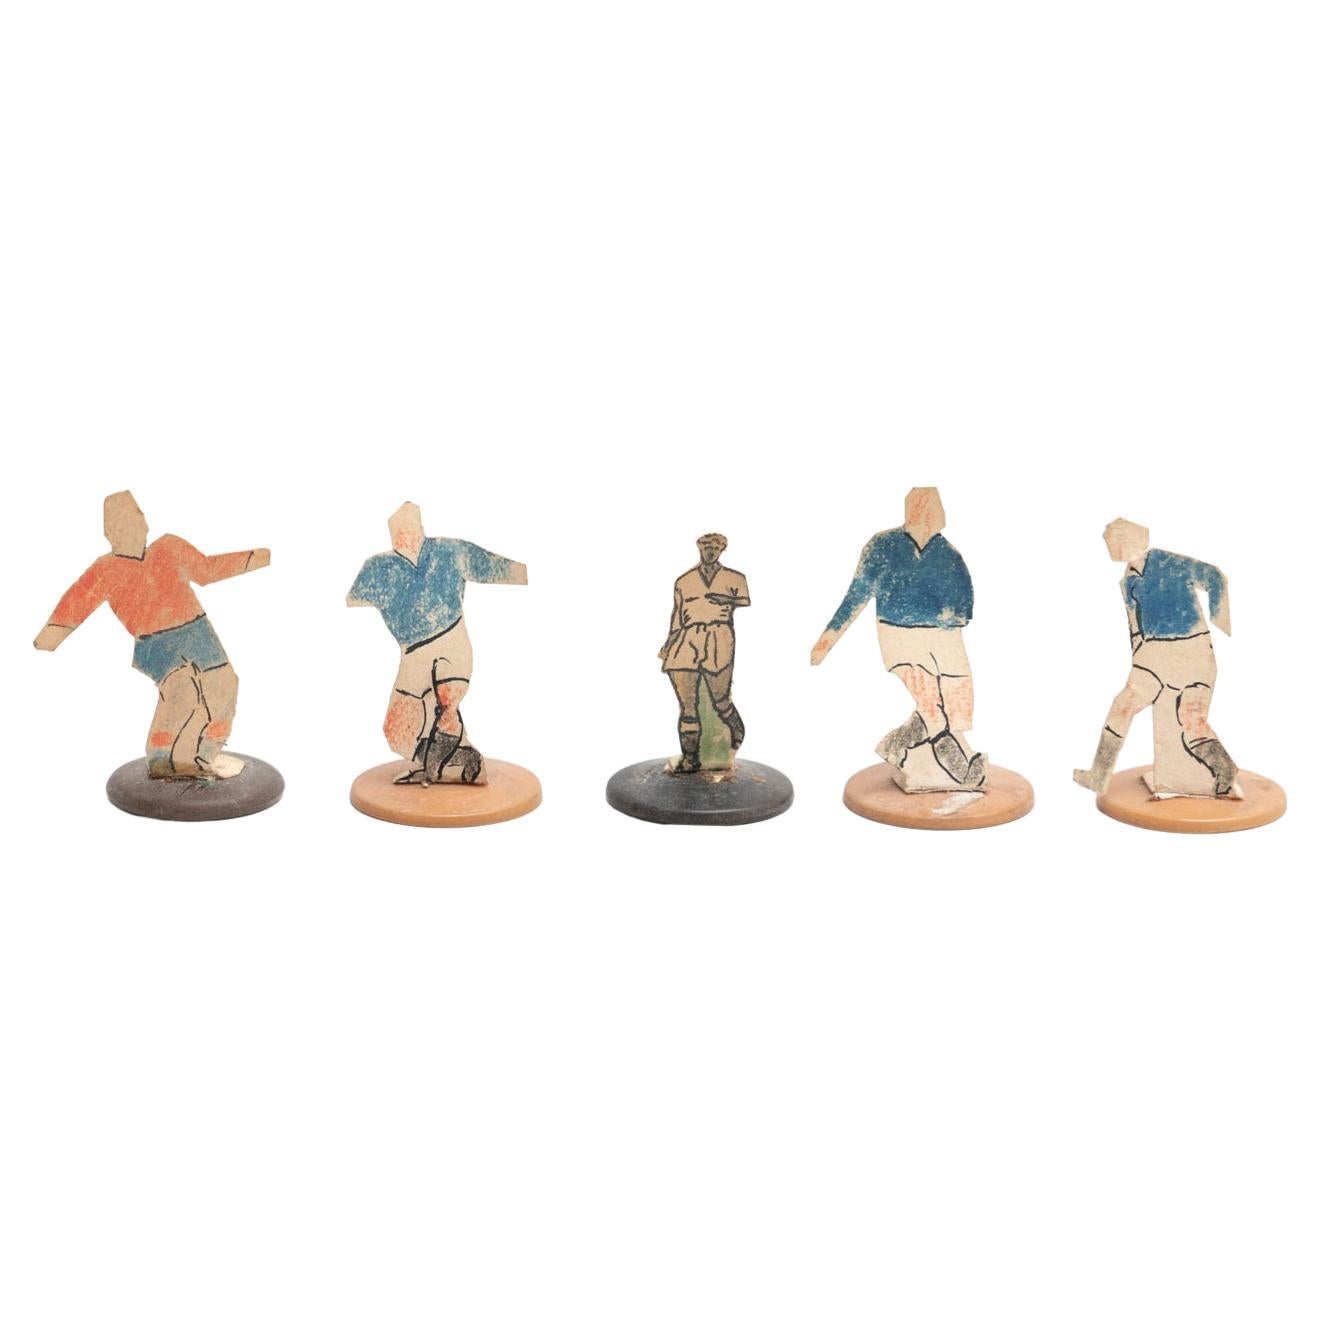 Ensemble de 5 figurines de football traditionnelles anciennes à boutons, datant d'environ 1950